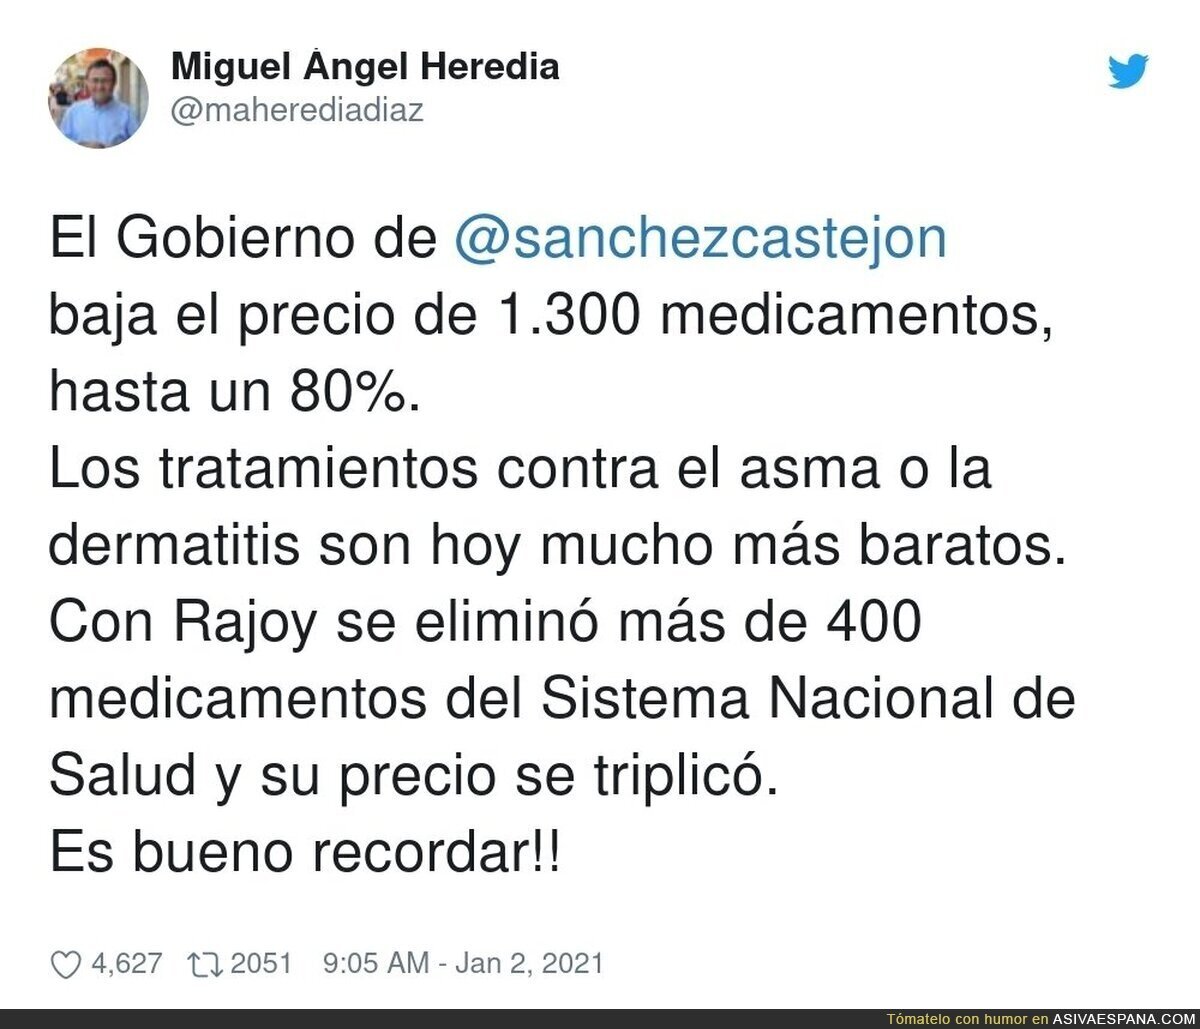 Que nadie olvide estas grandes medidas de Pedro Sánchez